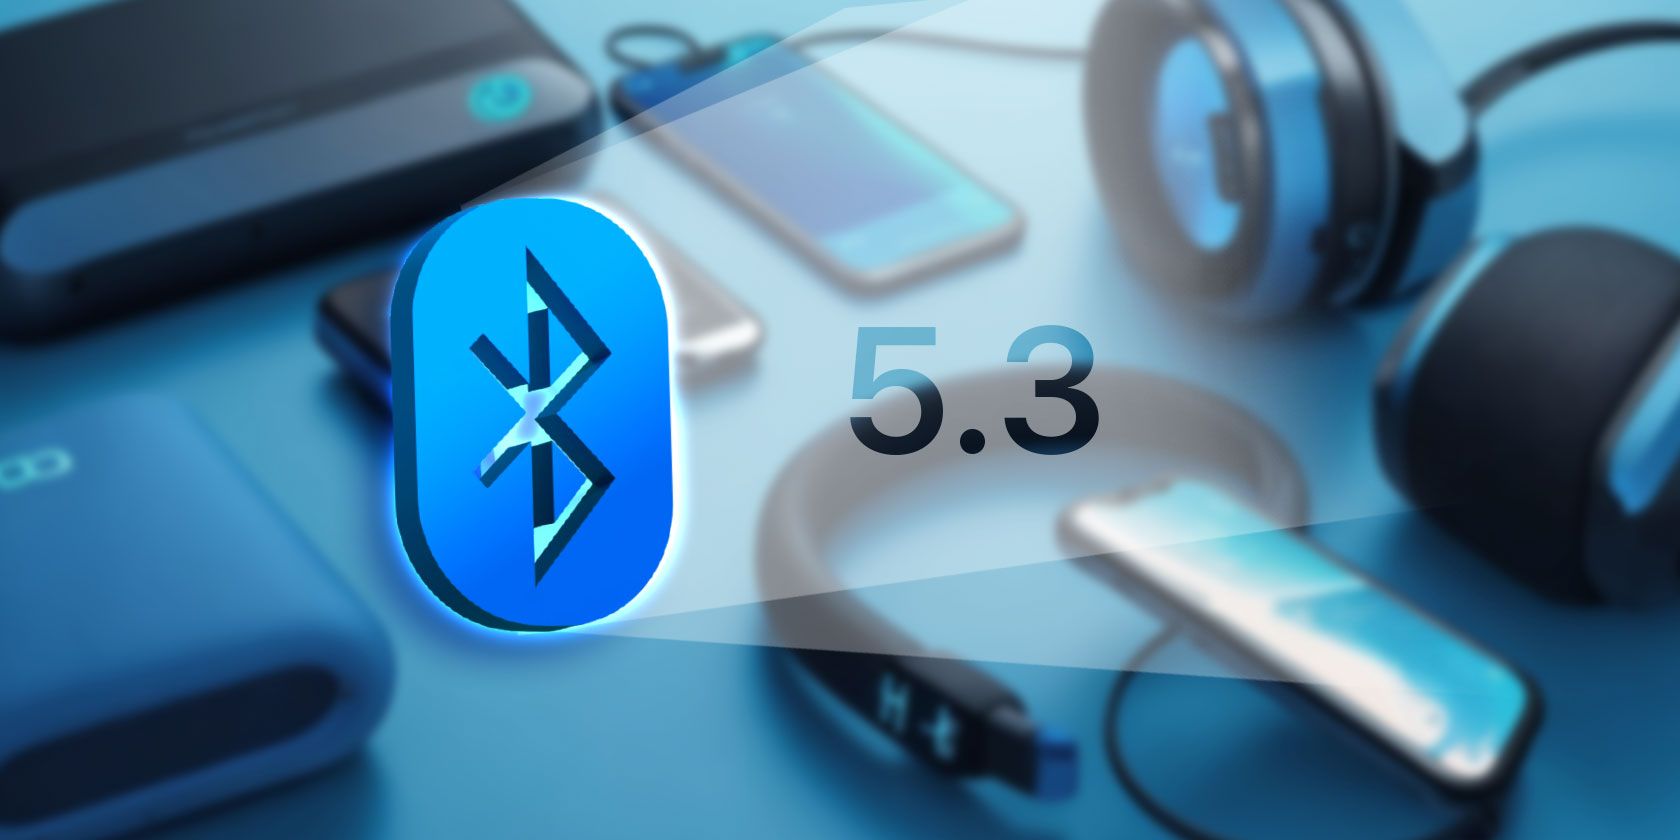 Na stronie iPhoneIslam.com logo Bluetooth 5.3 jest widoczne w tle na różnych urządzeniach, takich jak smartfony, smartwatch i słuchawki AirPods.